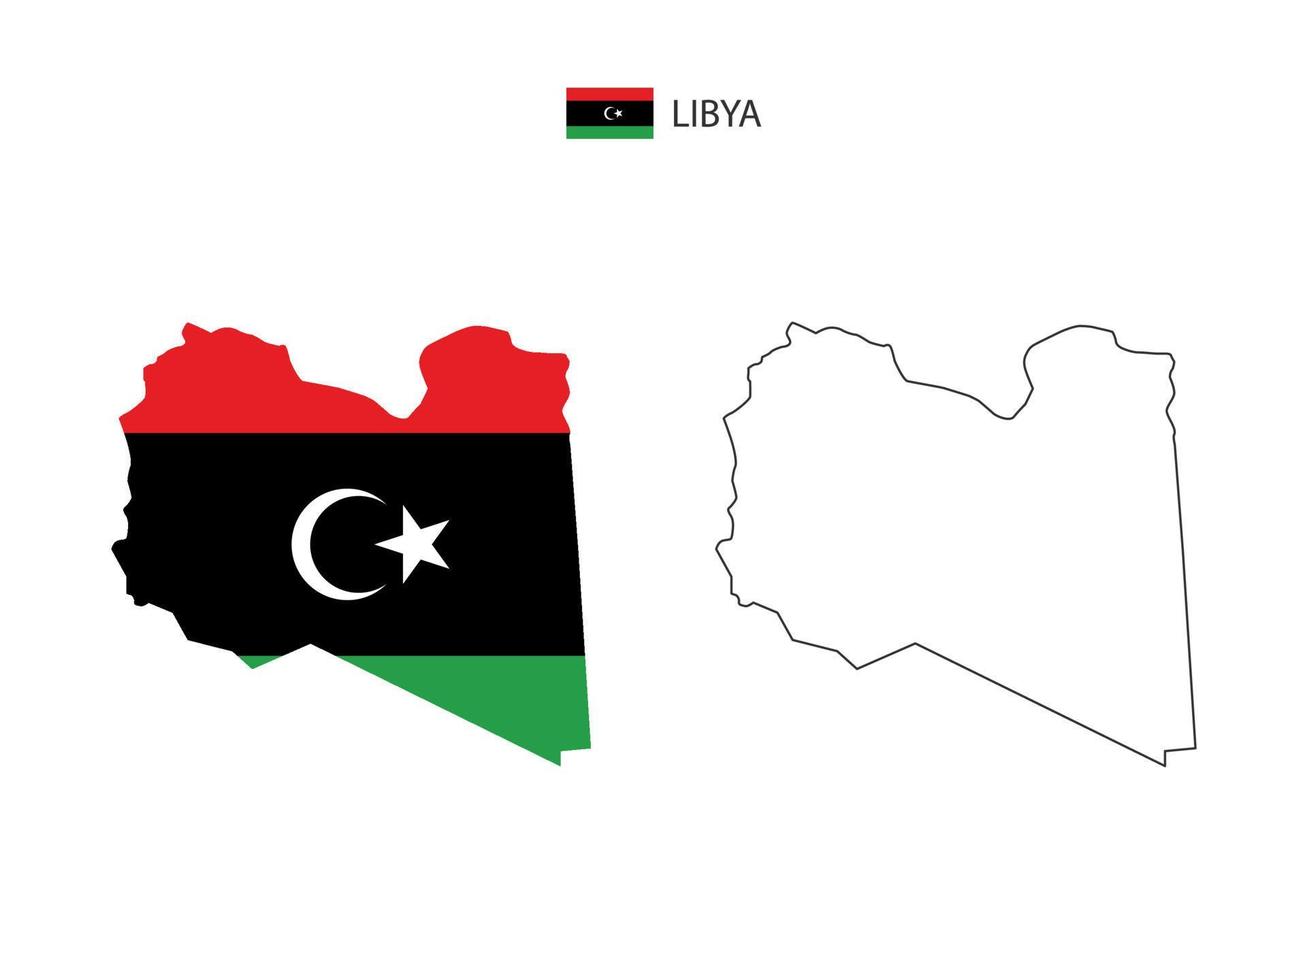 libyen-karte stadtvektor geteilt durch umriss-einfachheitsstil. haben 2 Versionen, eine schwarze Version mit dünner Linie und eine Version in der Farbe der Landesflagge. beide Karten waren auf dem weißen Hintergrund. vektor